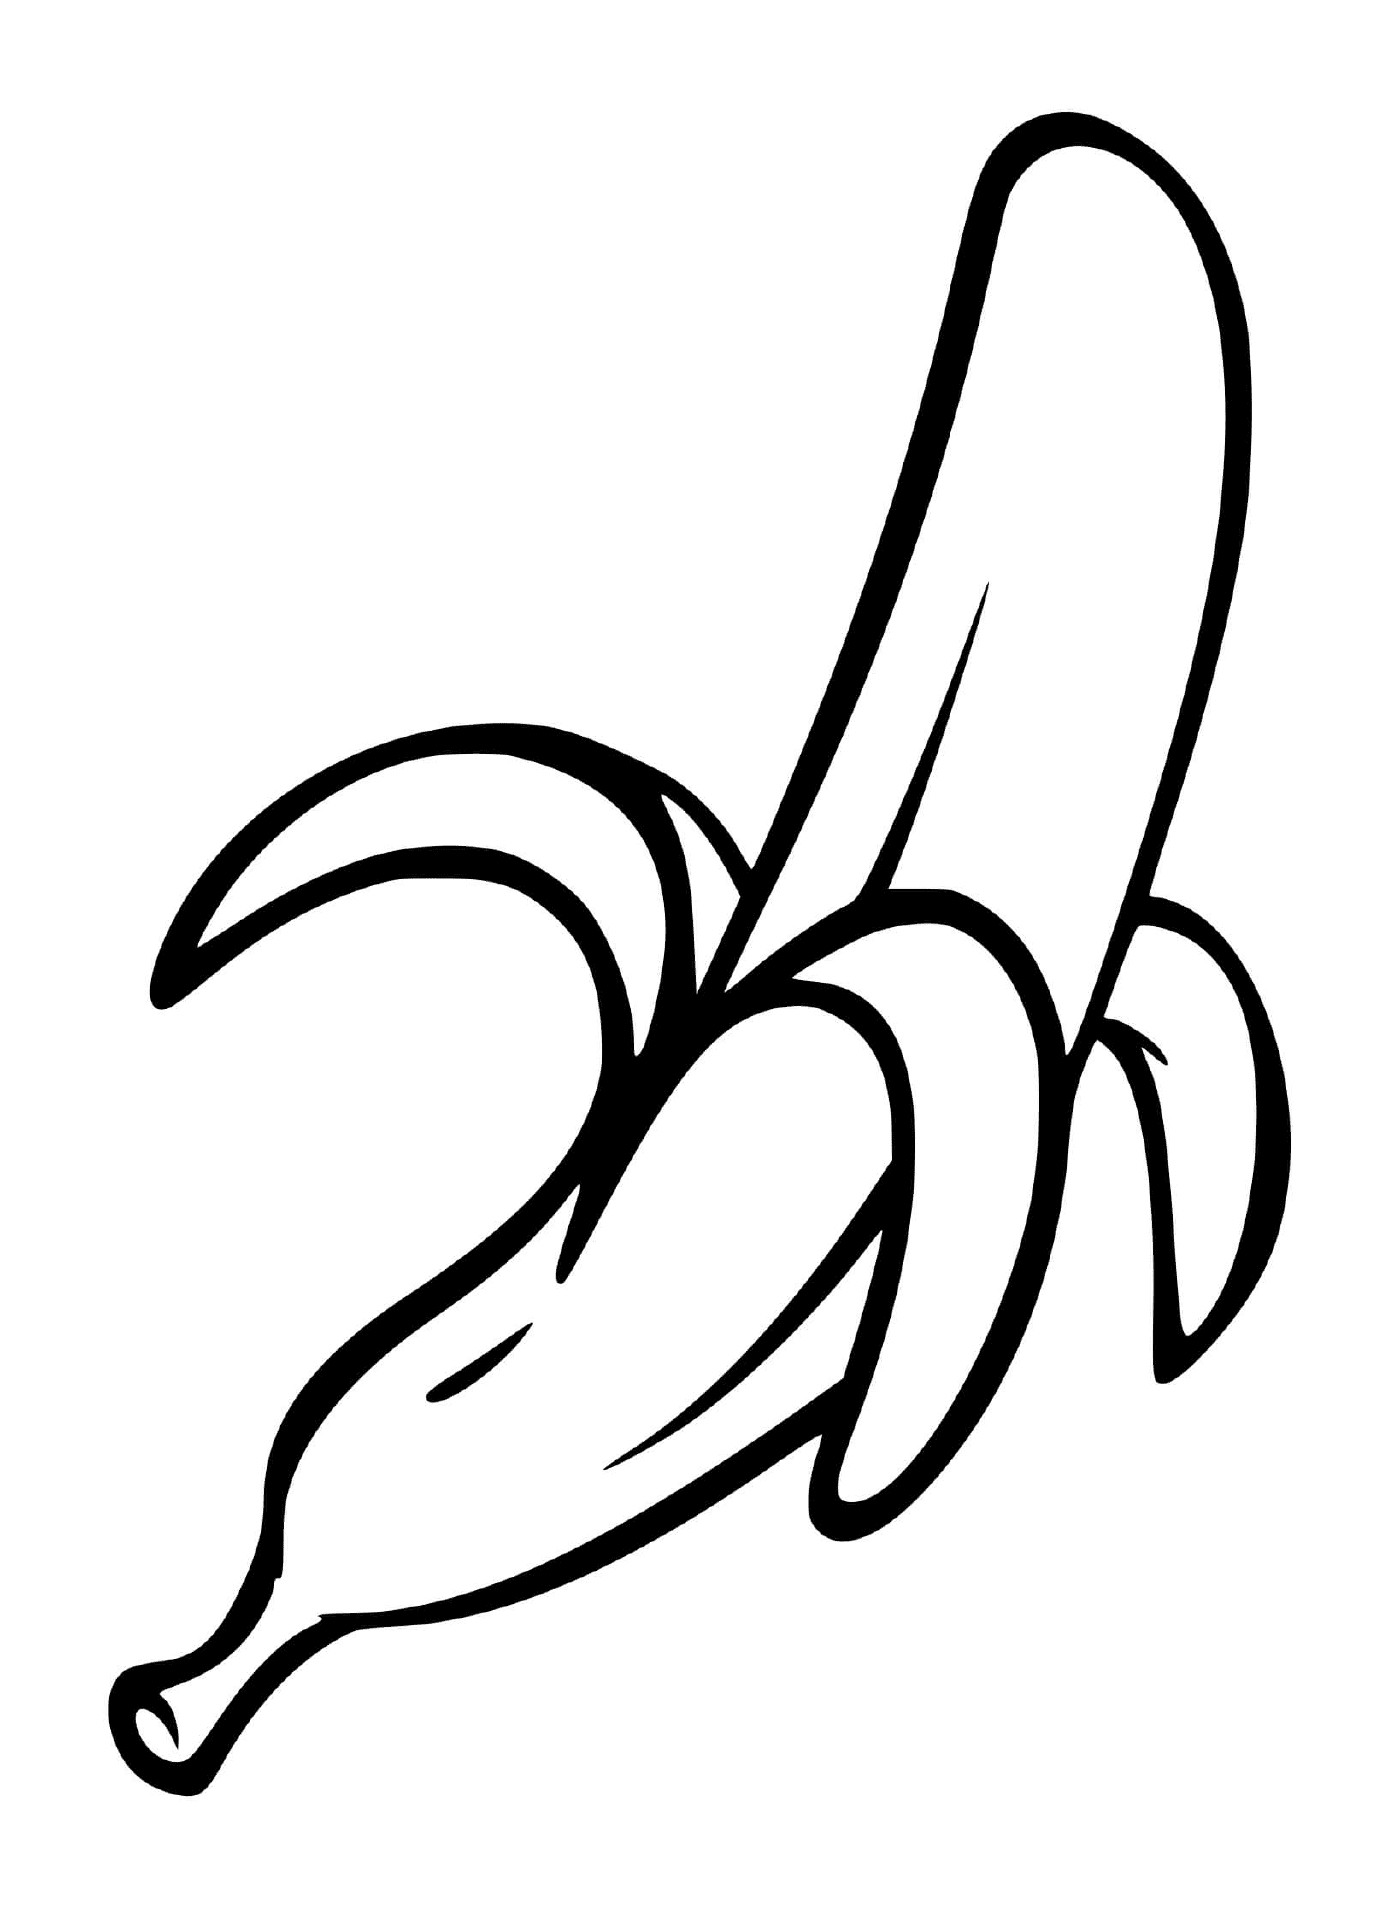  Un plátano pelado 